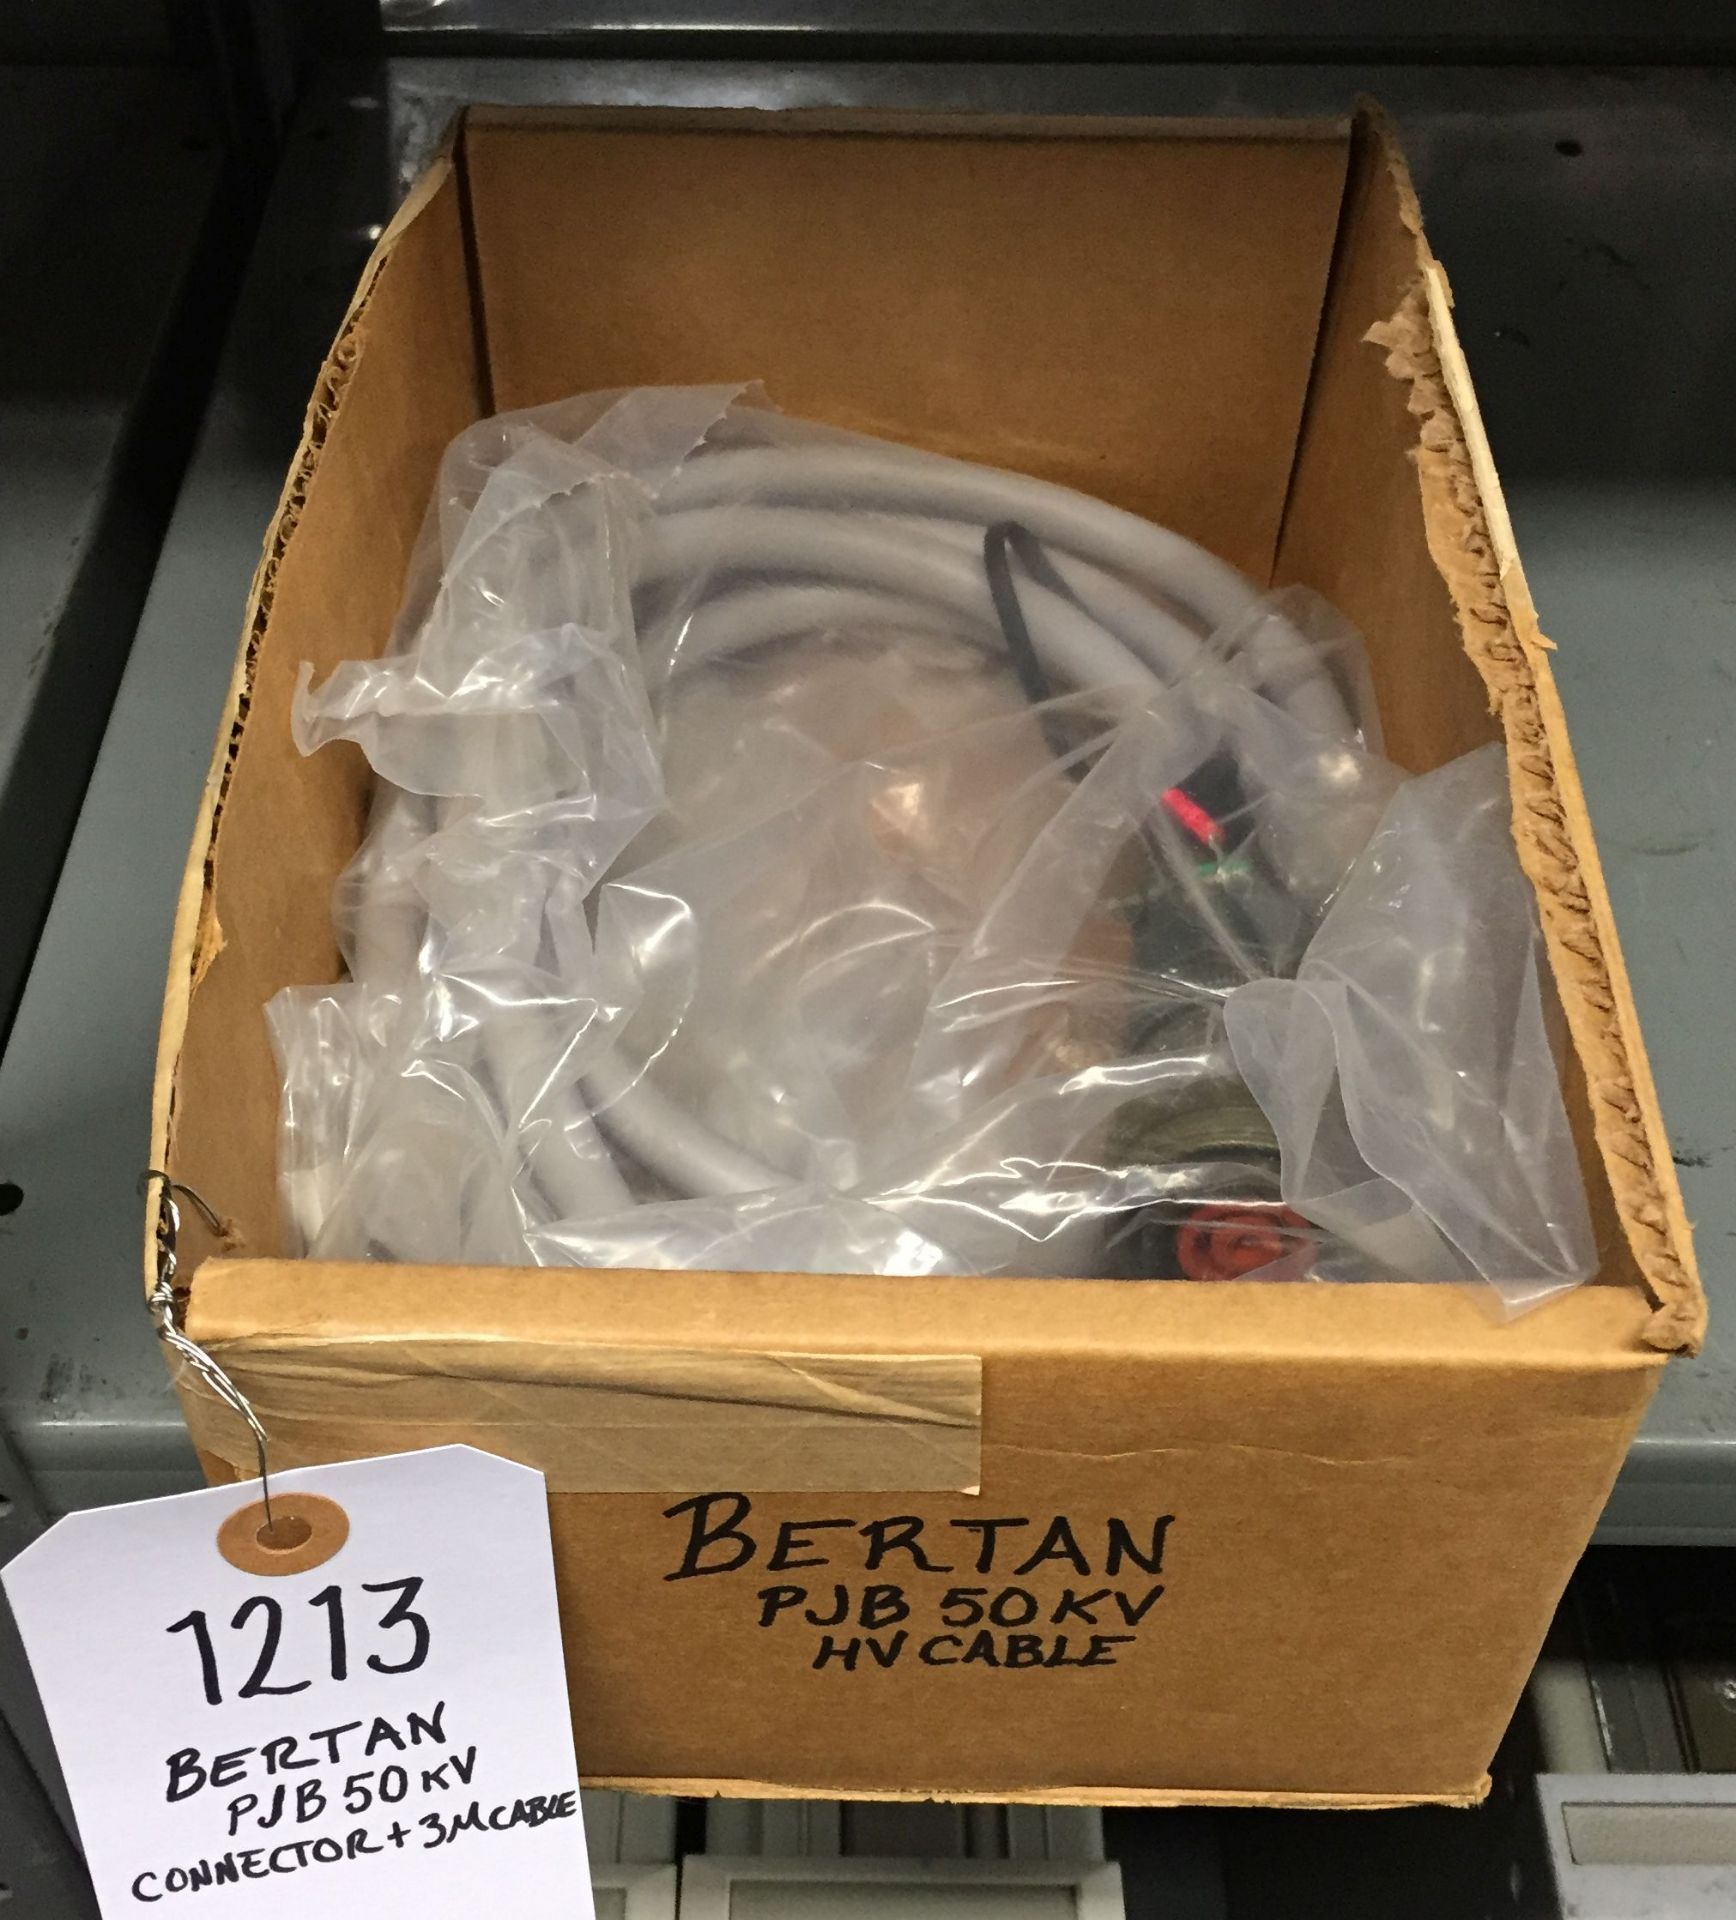 Bertan PJB50KV High Voltage Connector + Cable